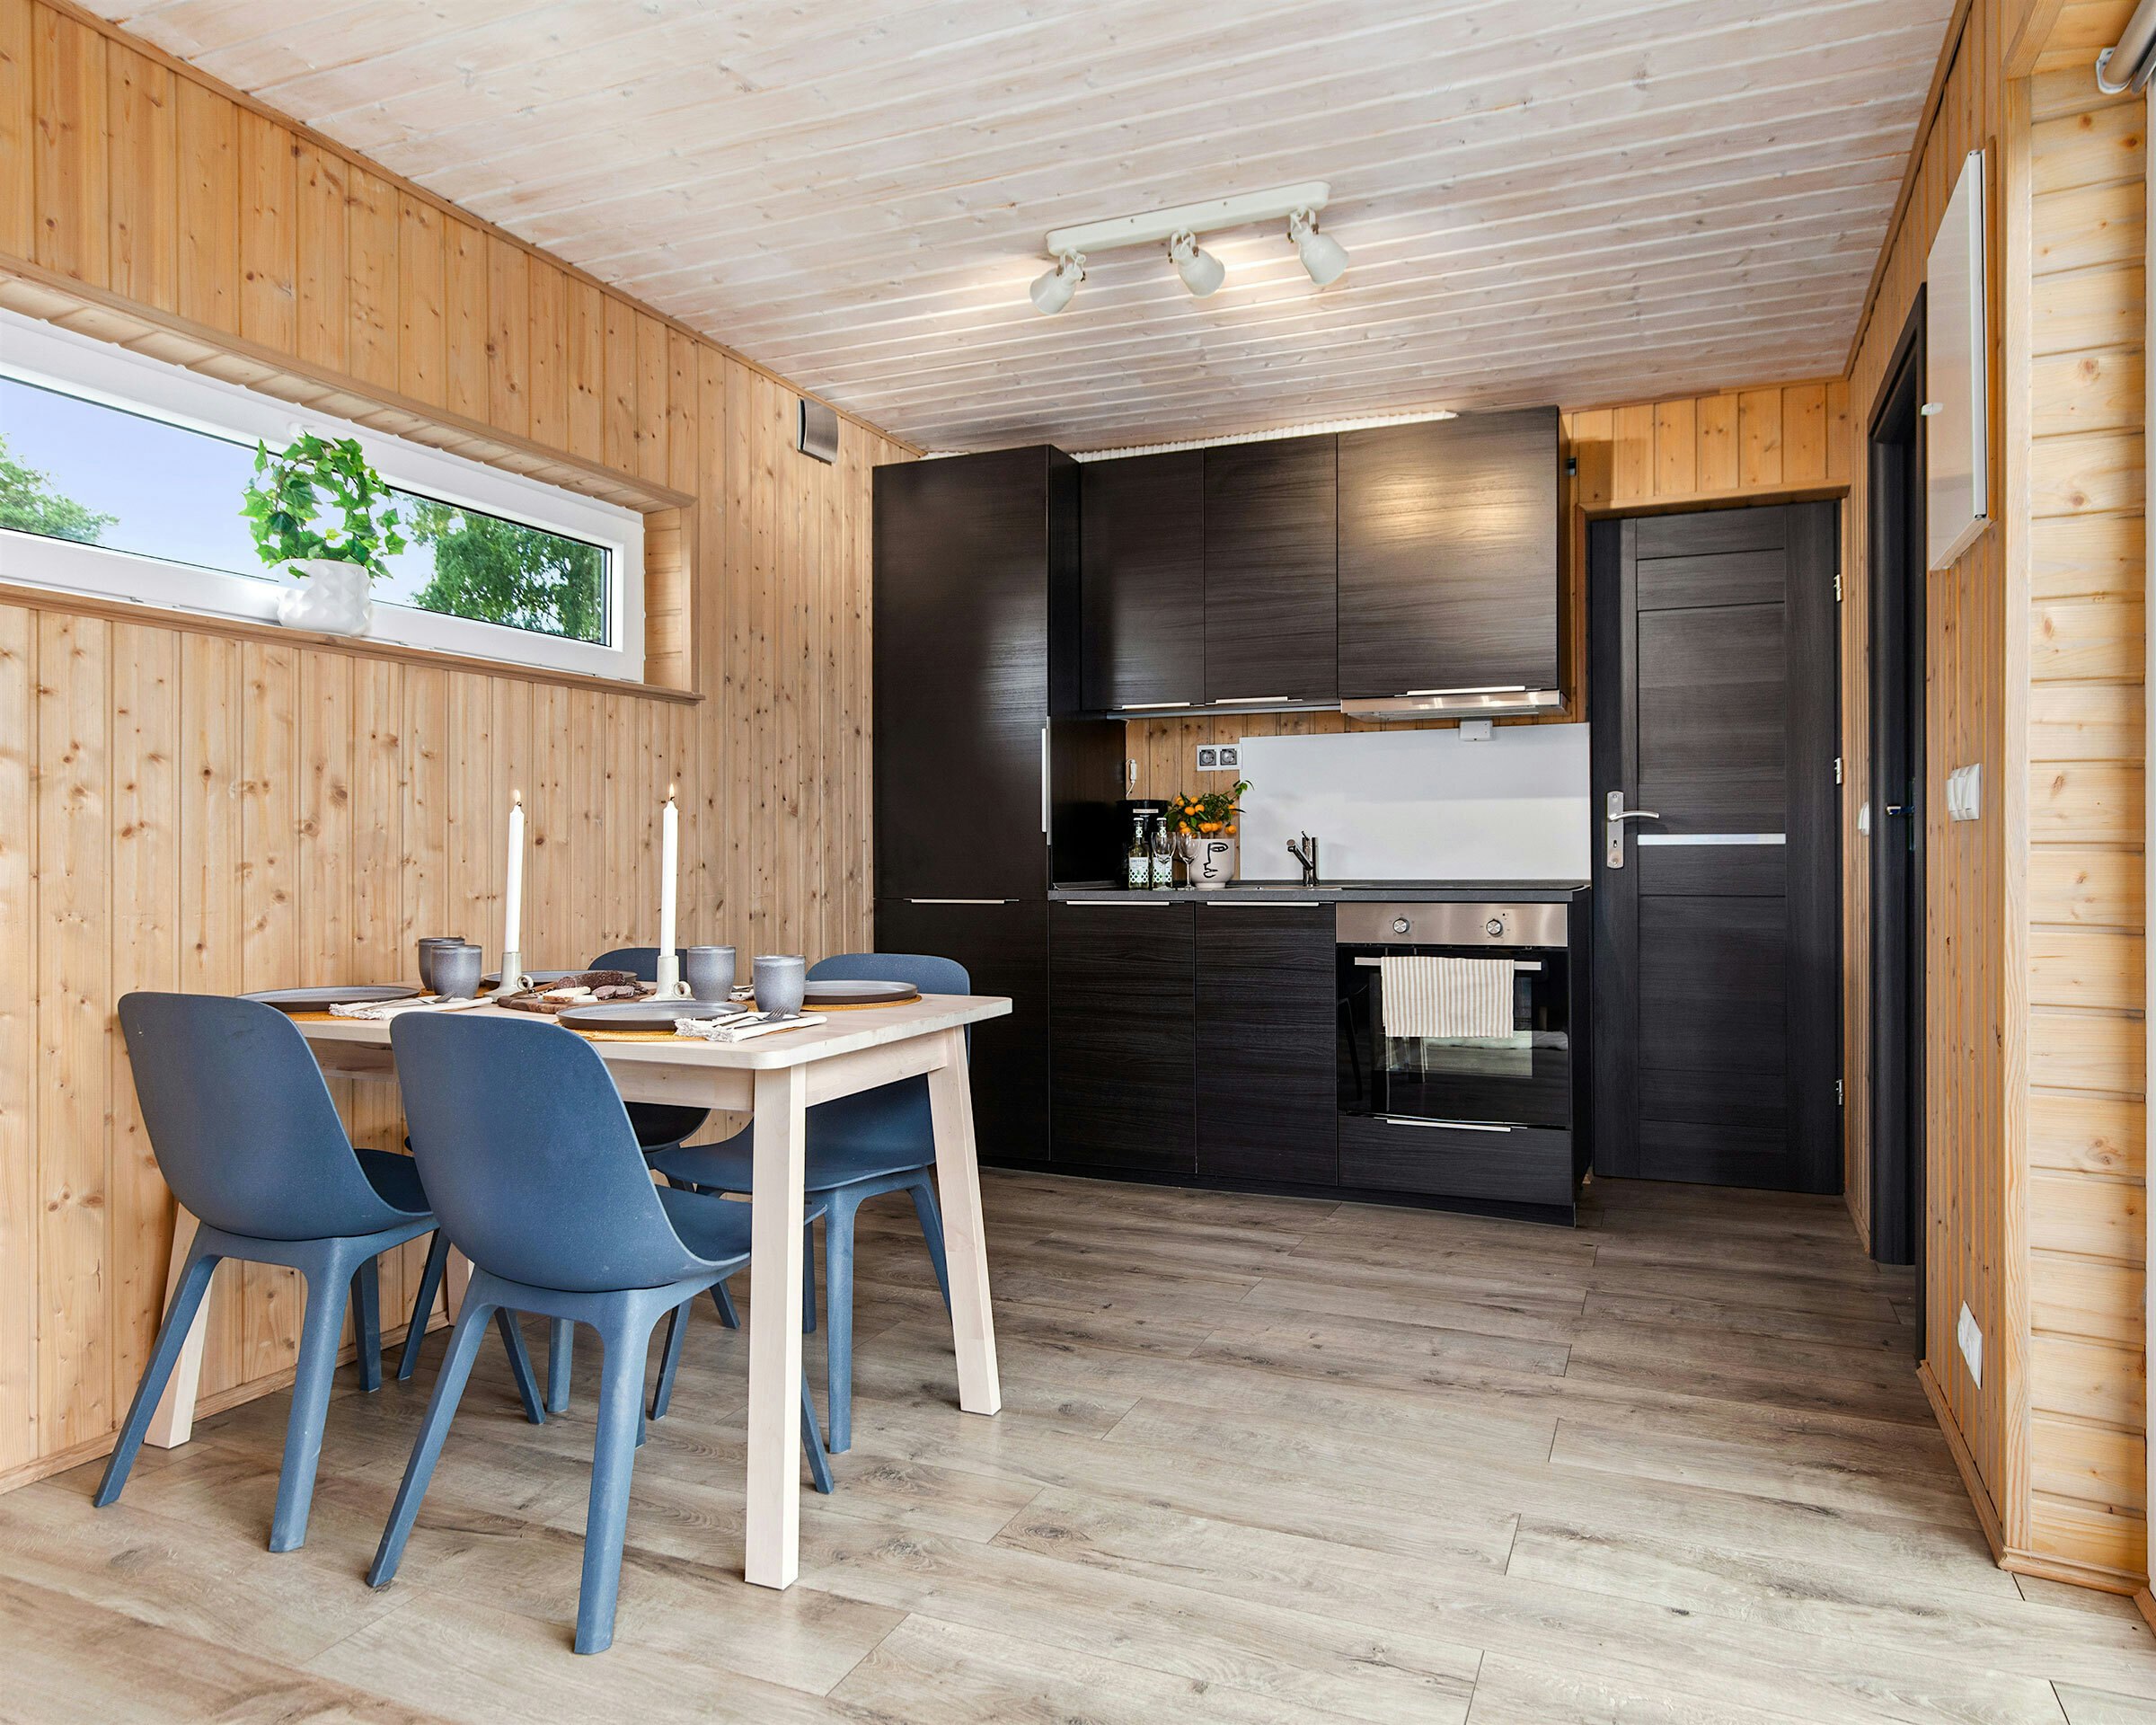 Modernes Zimmer mit gedecktem Esstisch, Küche mit Kühlschrank und Herd im Hintergrund. Foto